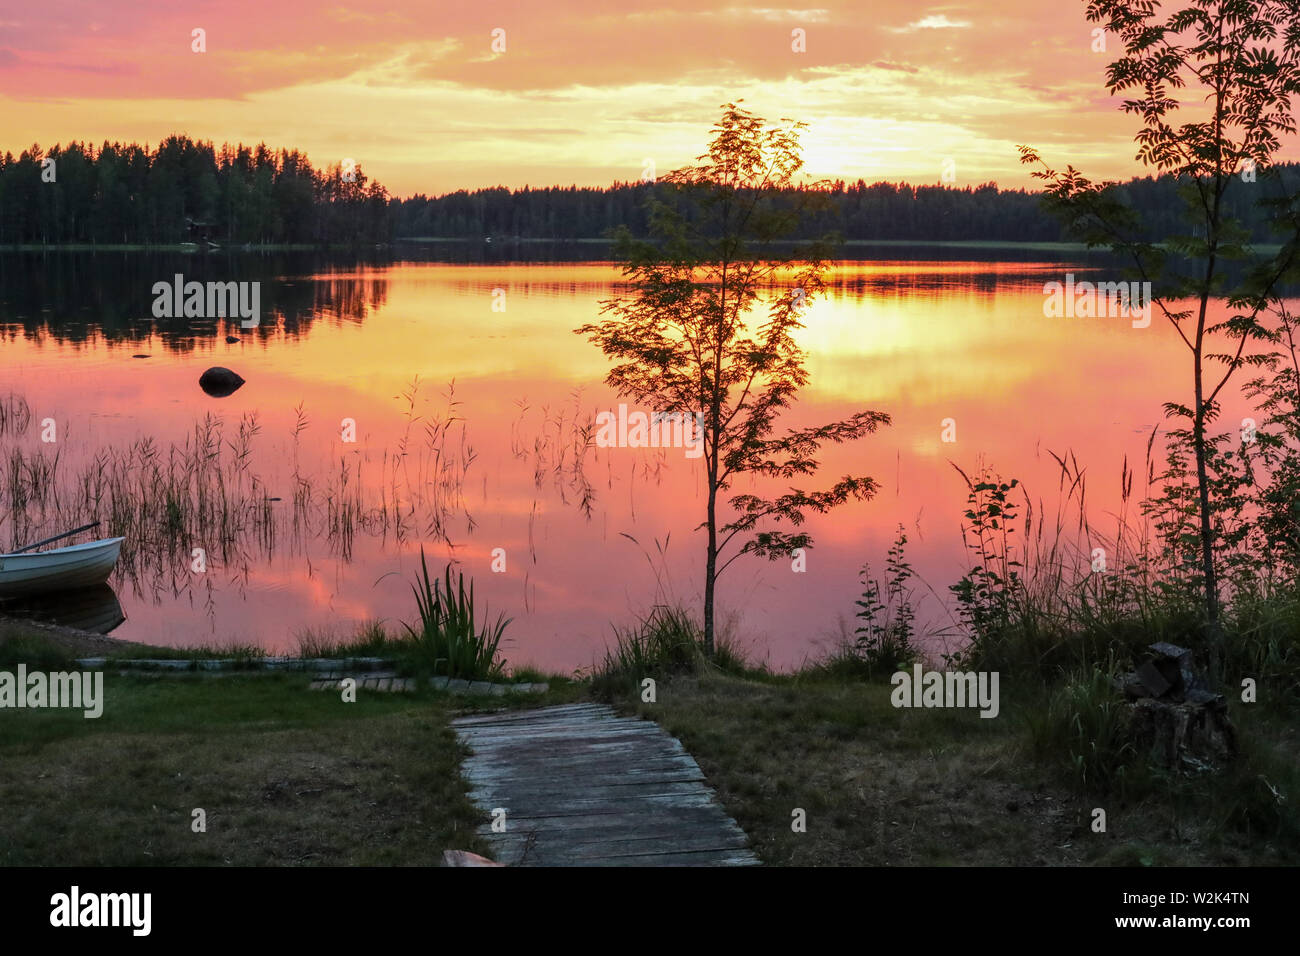 Sunset on Lake Ainesjärvi in Ylöjärvi, Finland Stock Photo